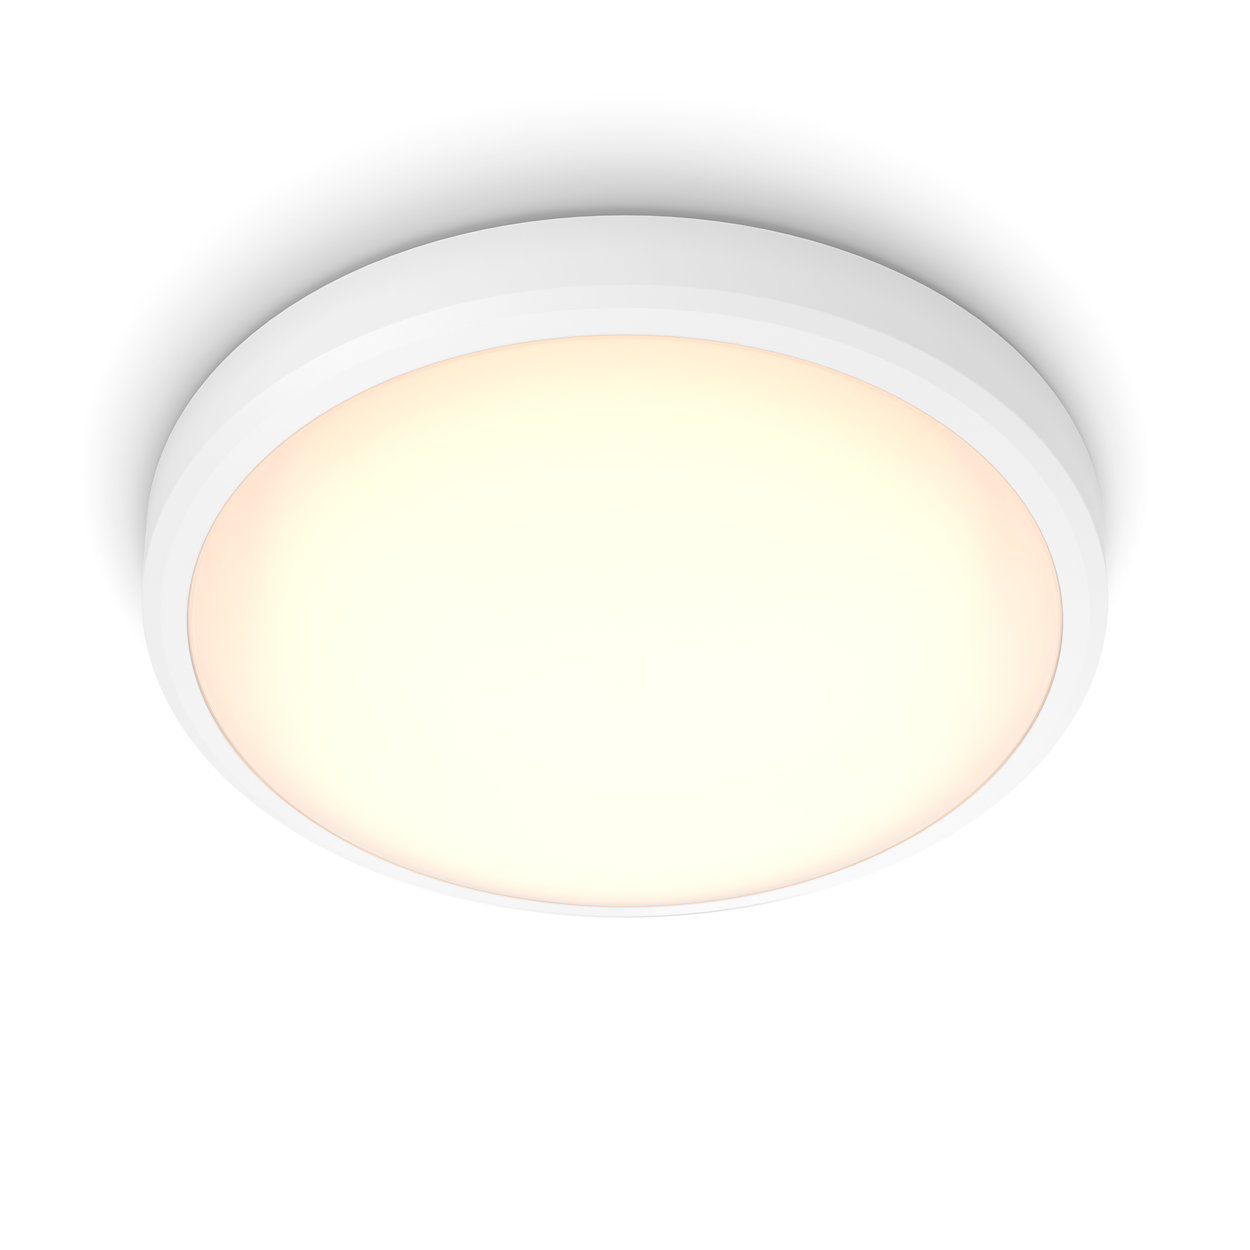 Un éclairage LED confortable pour vos yeux